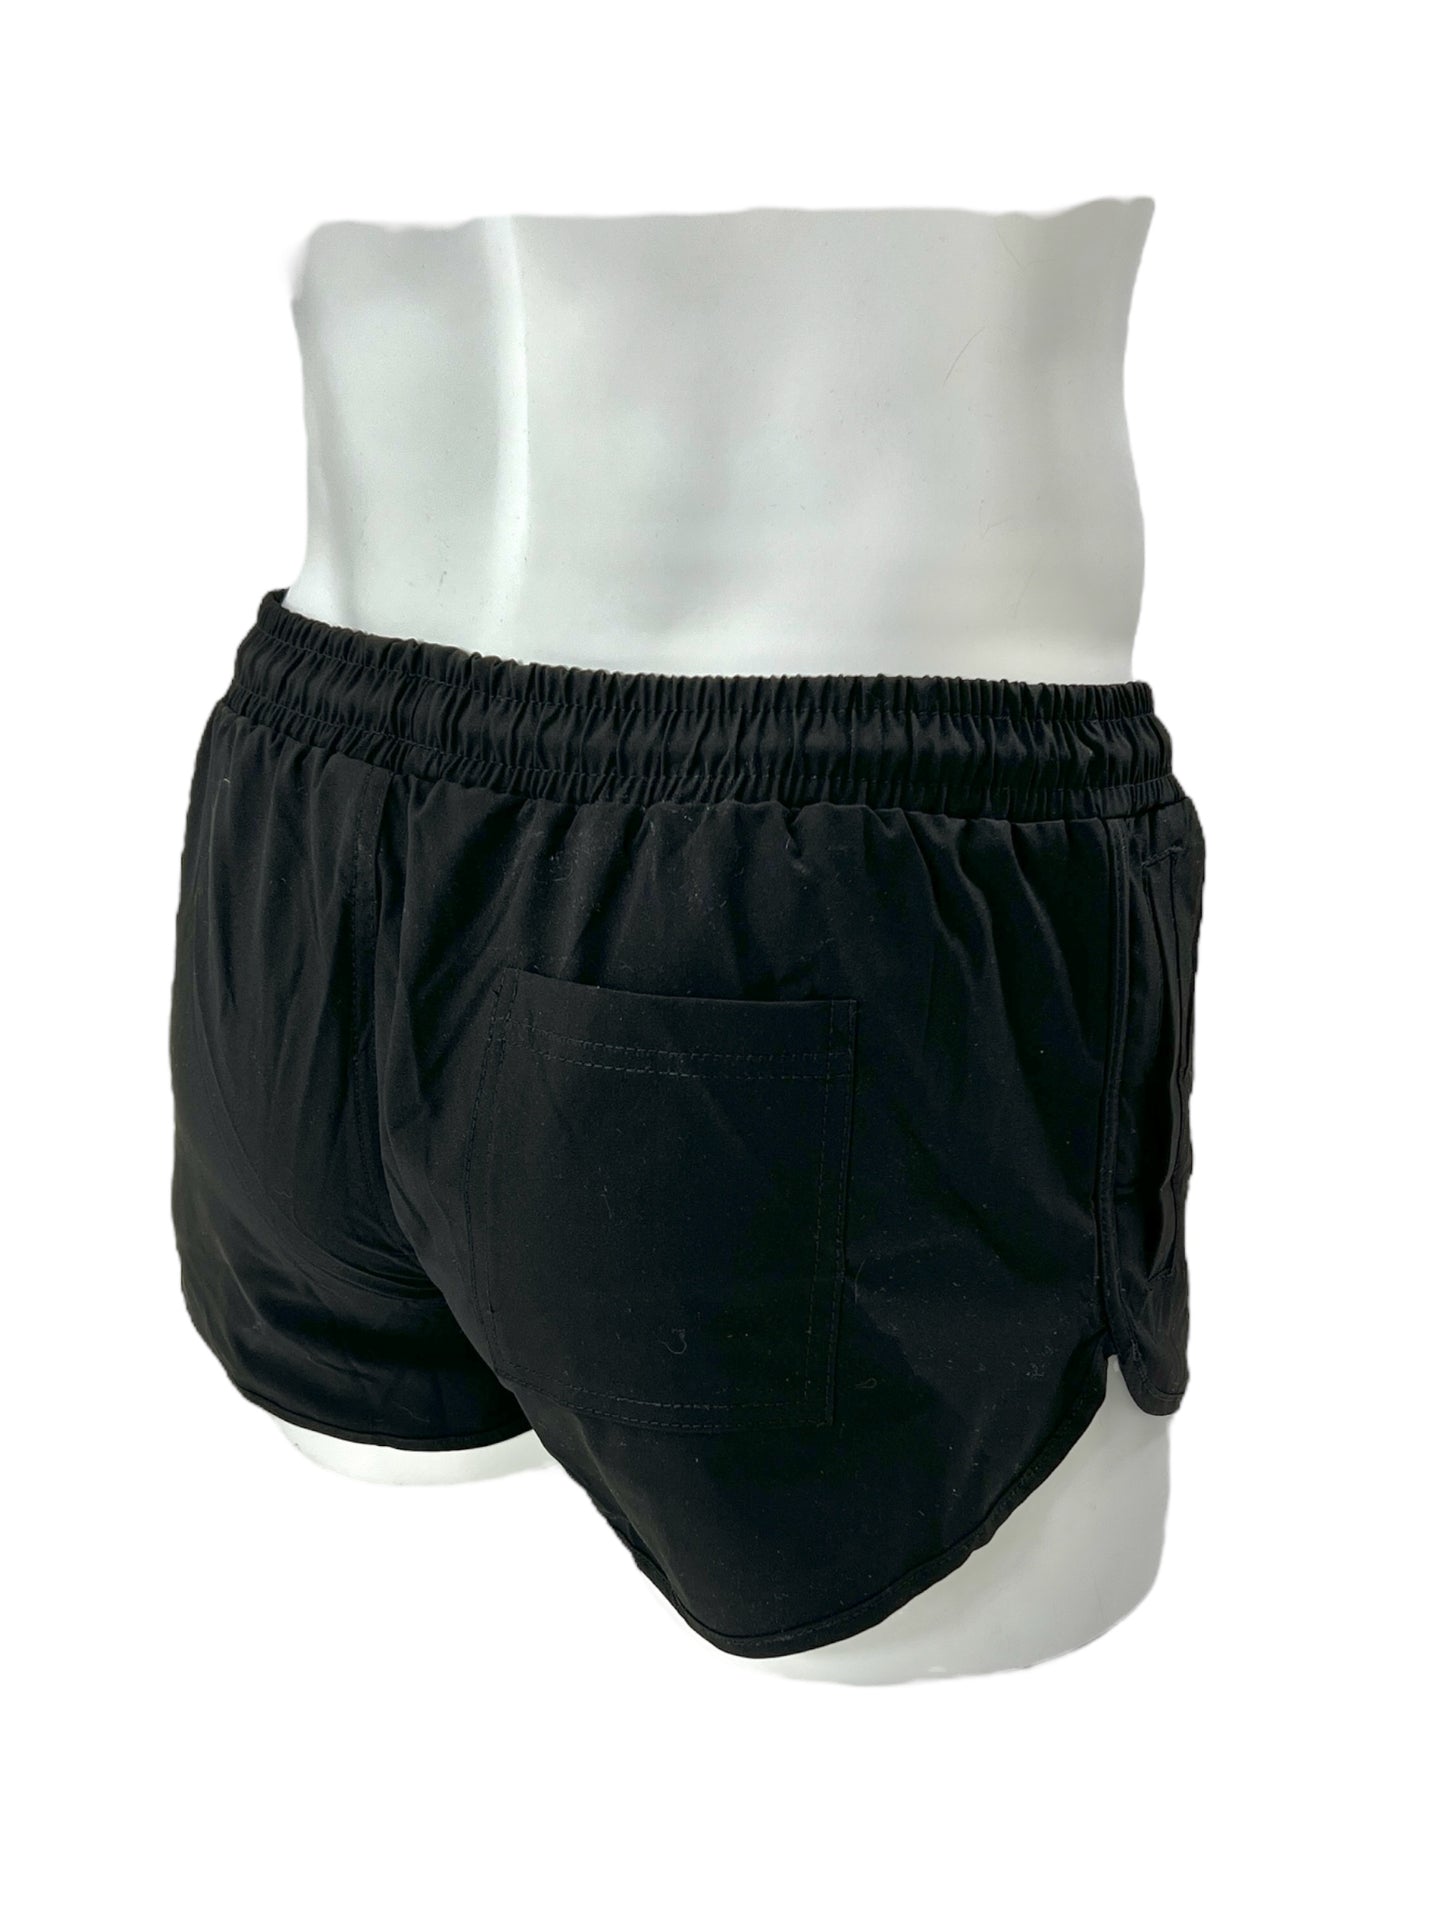 Shorts oder Badeshorts mit kurzem Bein in Beige, Schwarz oder Marineblau